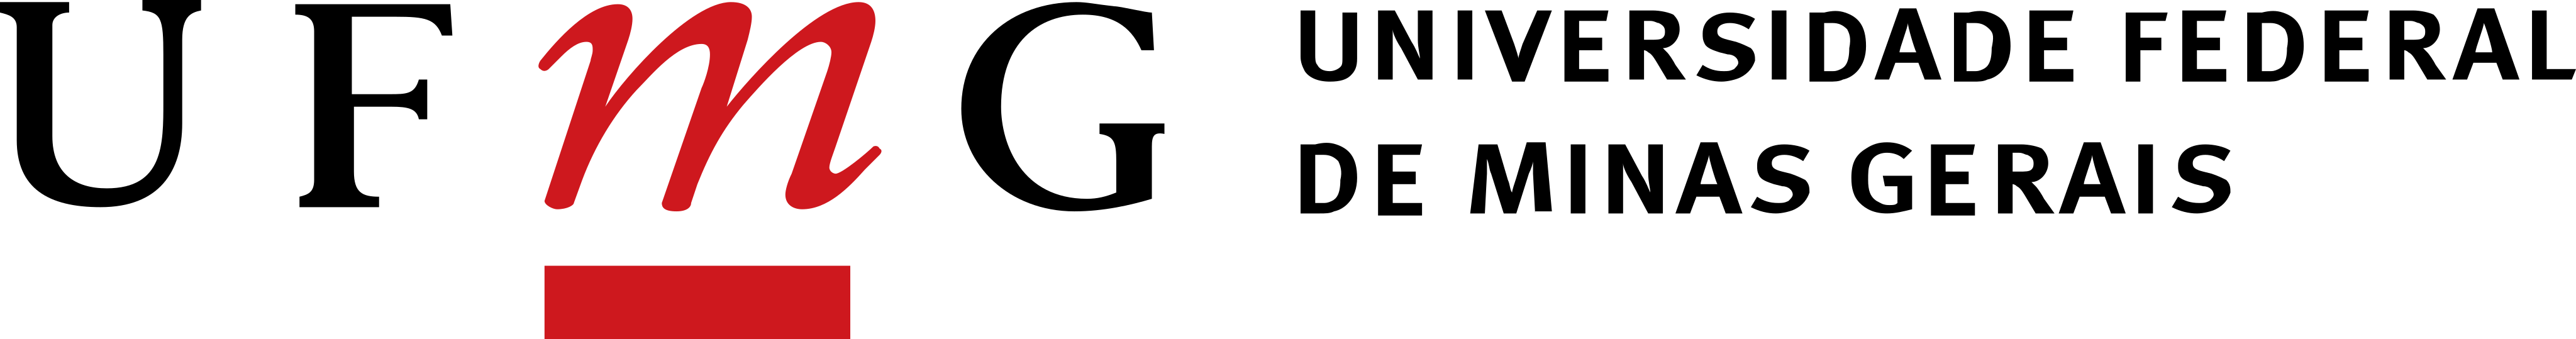 UFMG Logo.